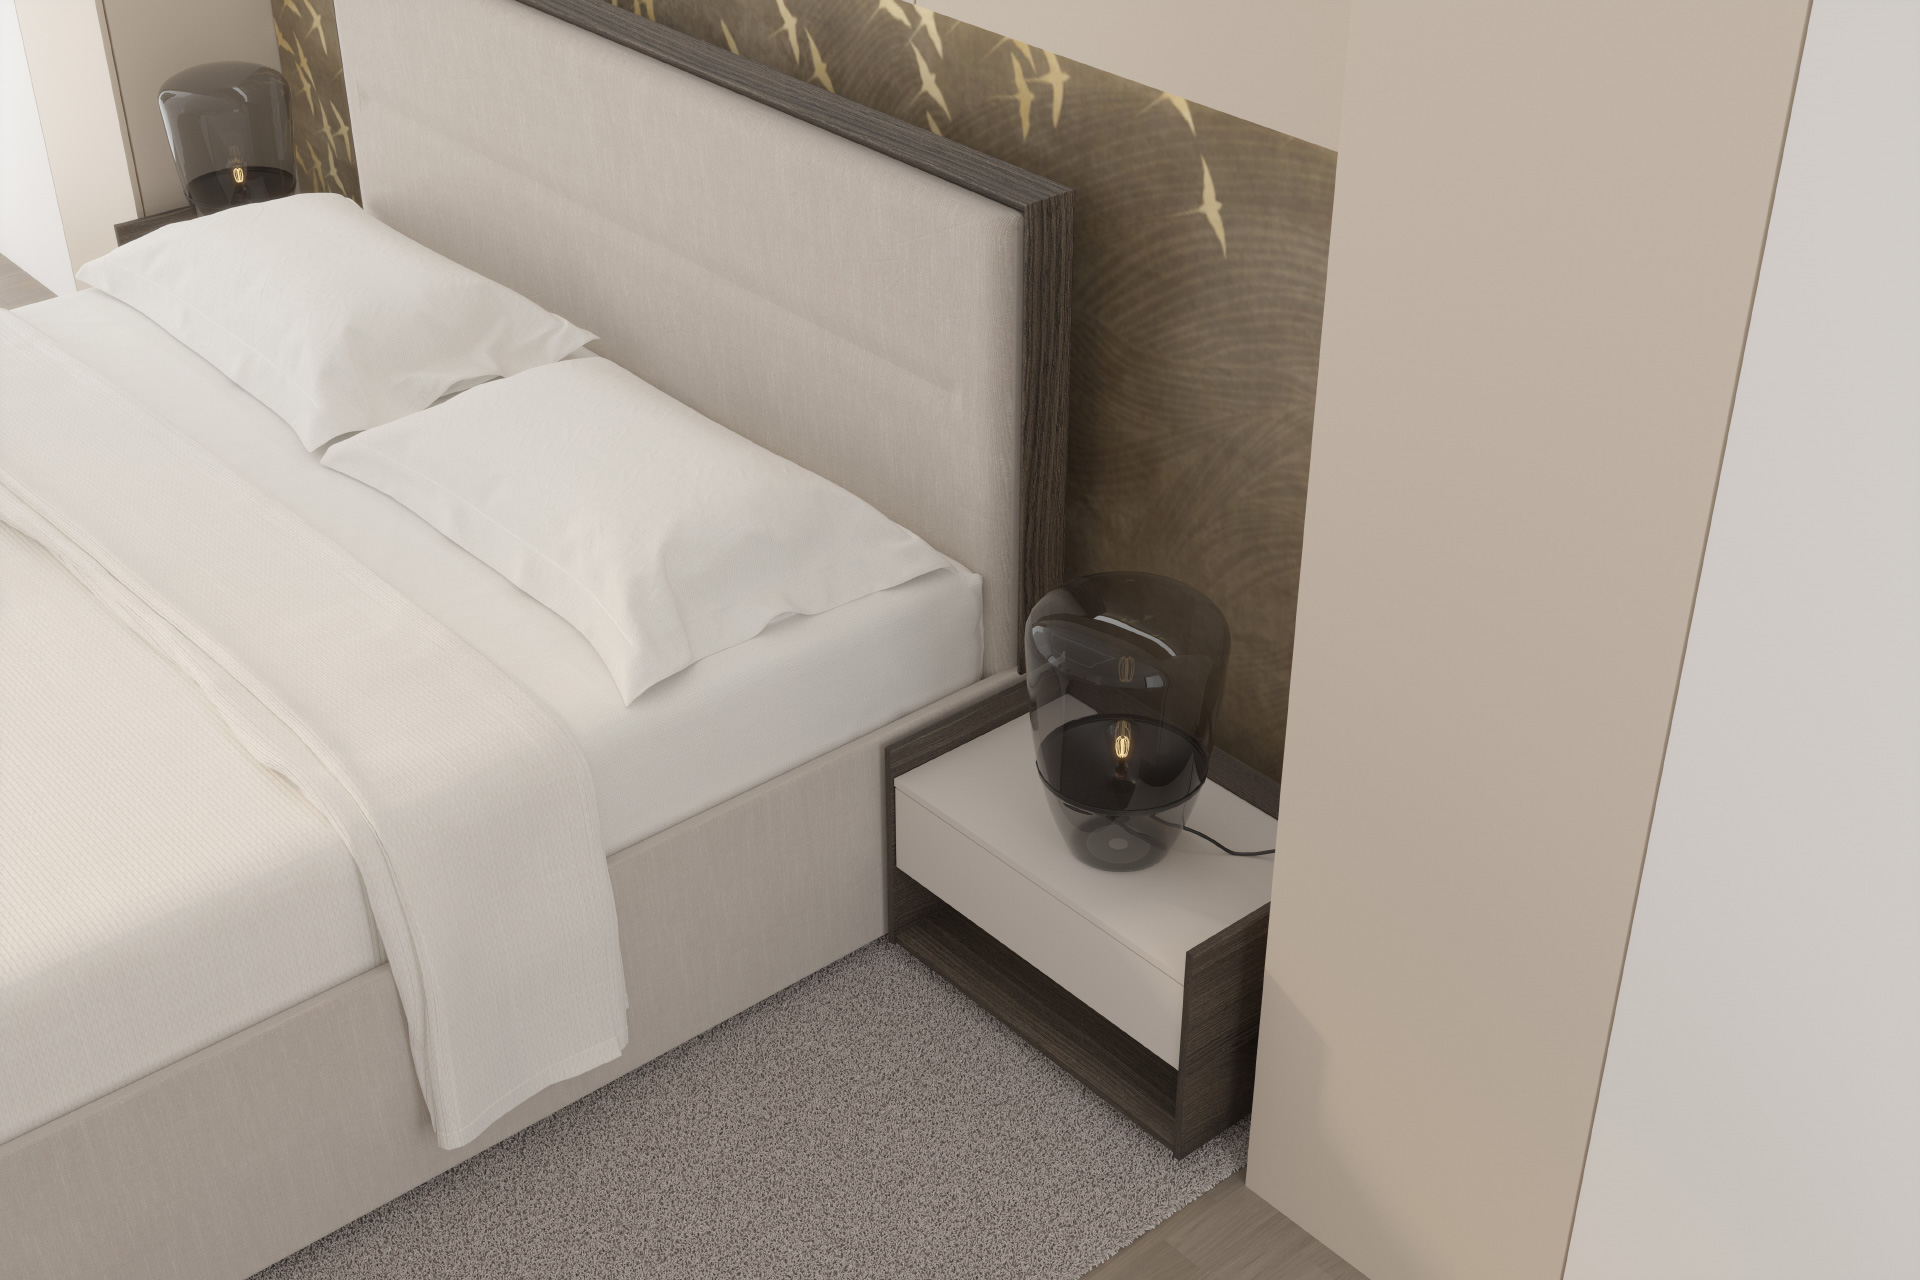 Hanák MADISON bedroom Luxurious and premium look